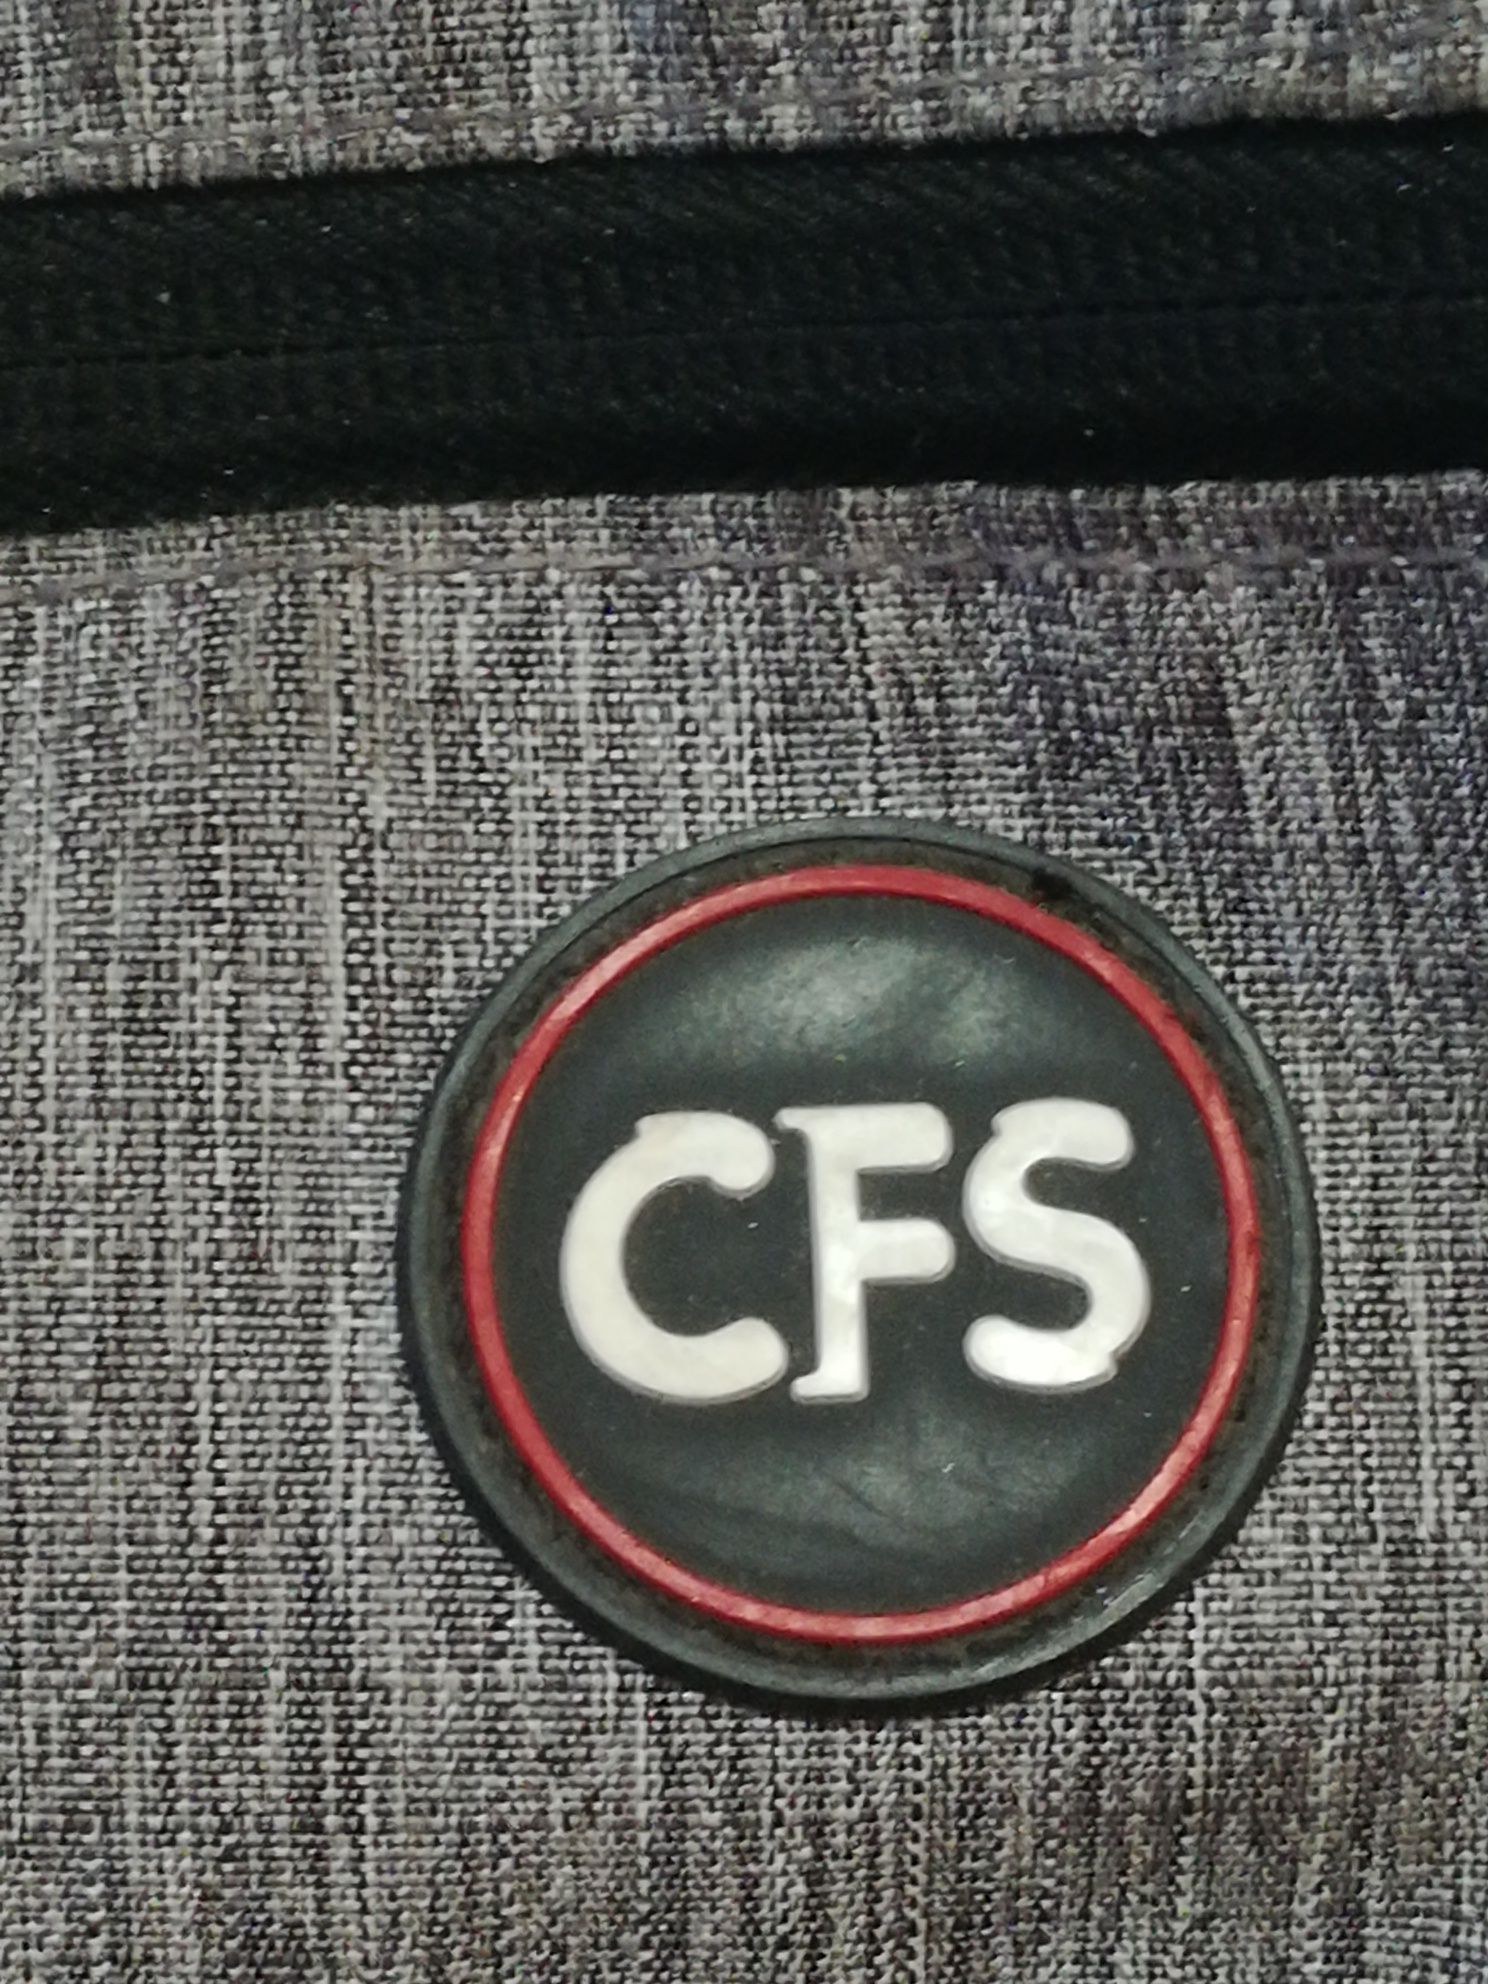 Plecak wielofunkcyjny CFS pojemny wygodny